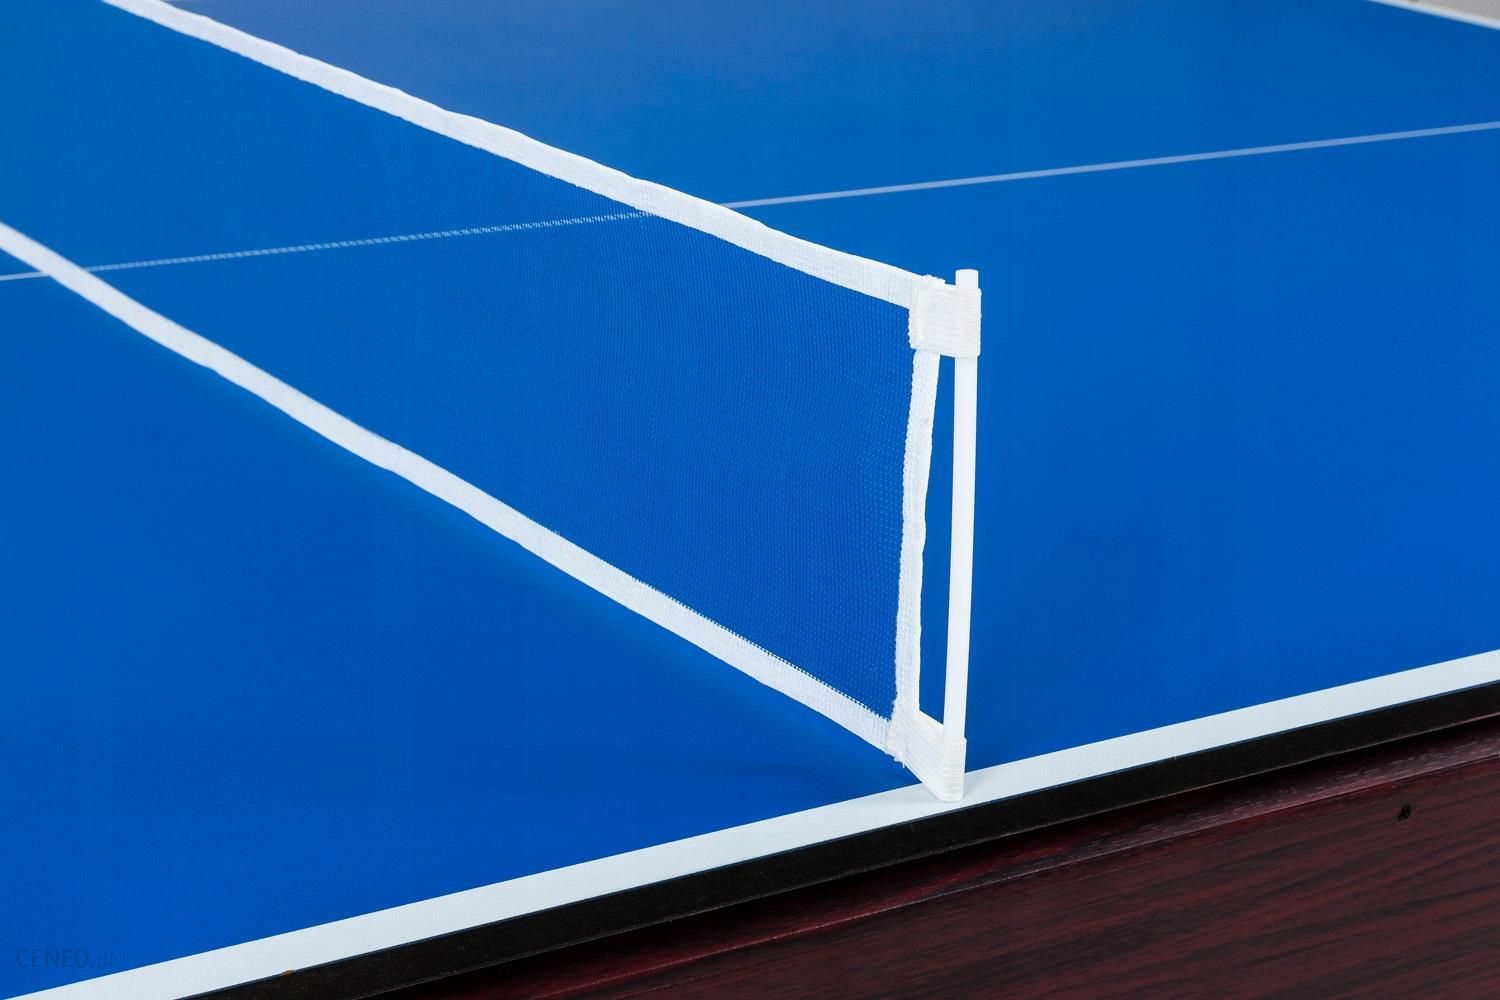 Stół Bilardowy 8 Ft Z Nakładka Ping Pong Akcesoria 